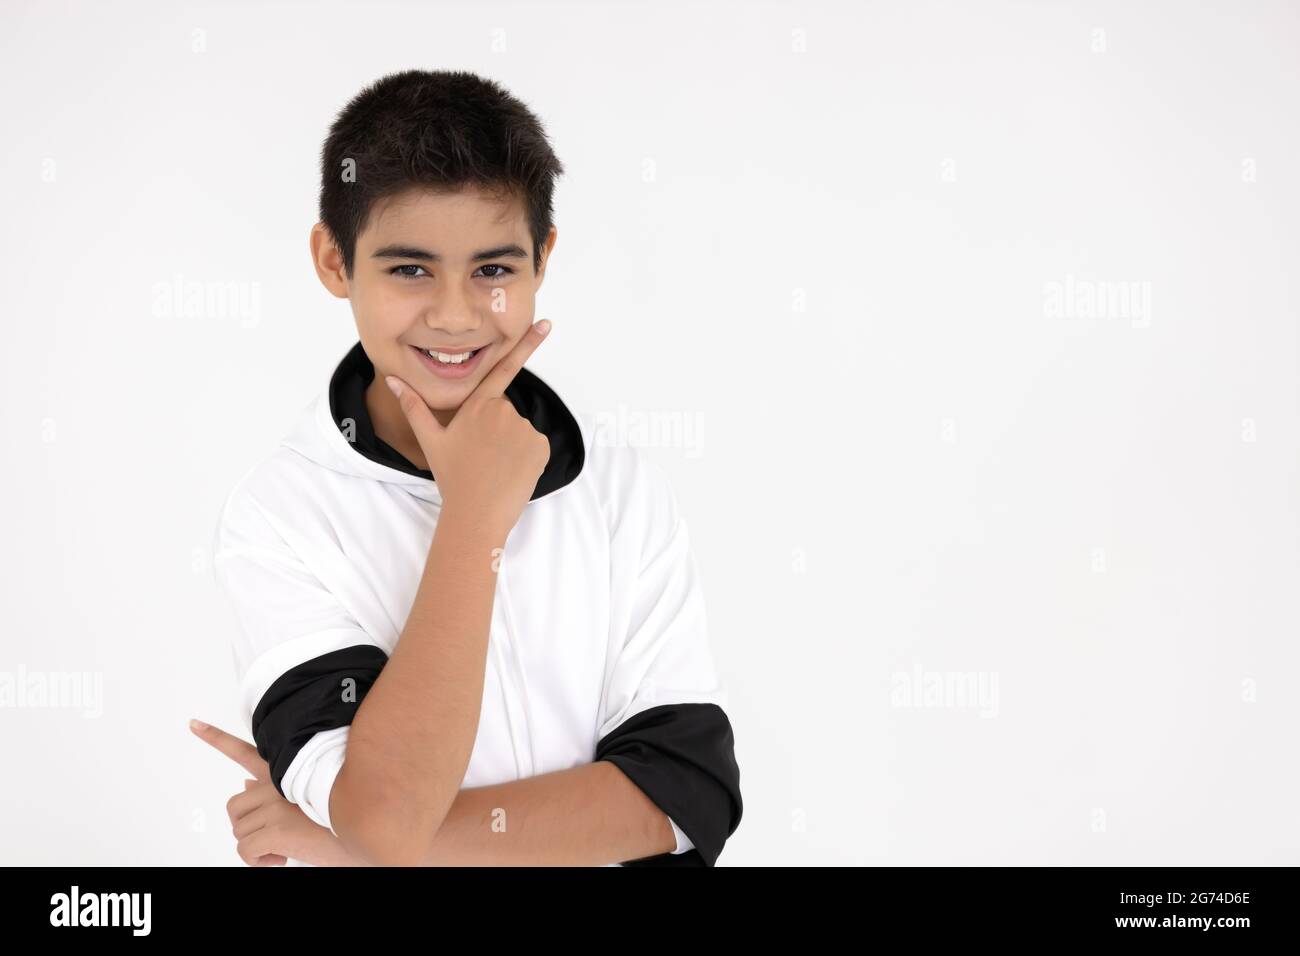 Portrait jeune enfant enfant asiatique sain garçon adolescent salutation heureux sourire drôle isolé sur fond blanc. Banque D'Images